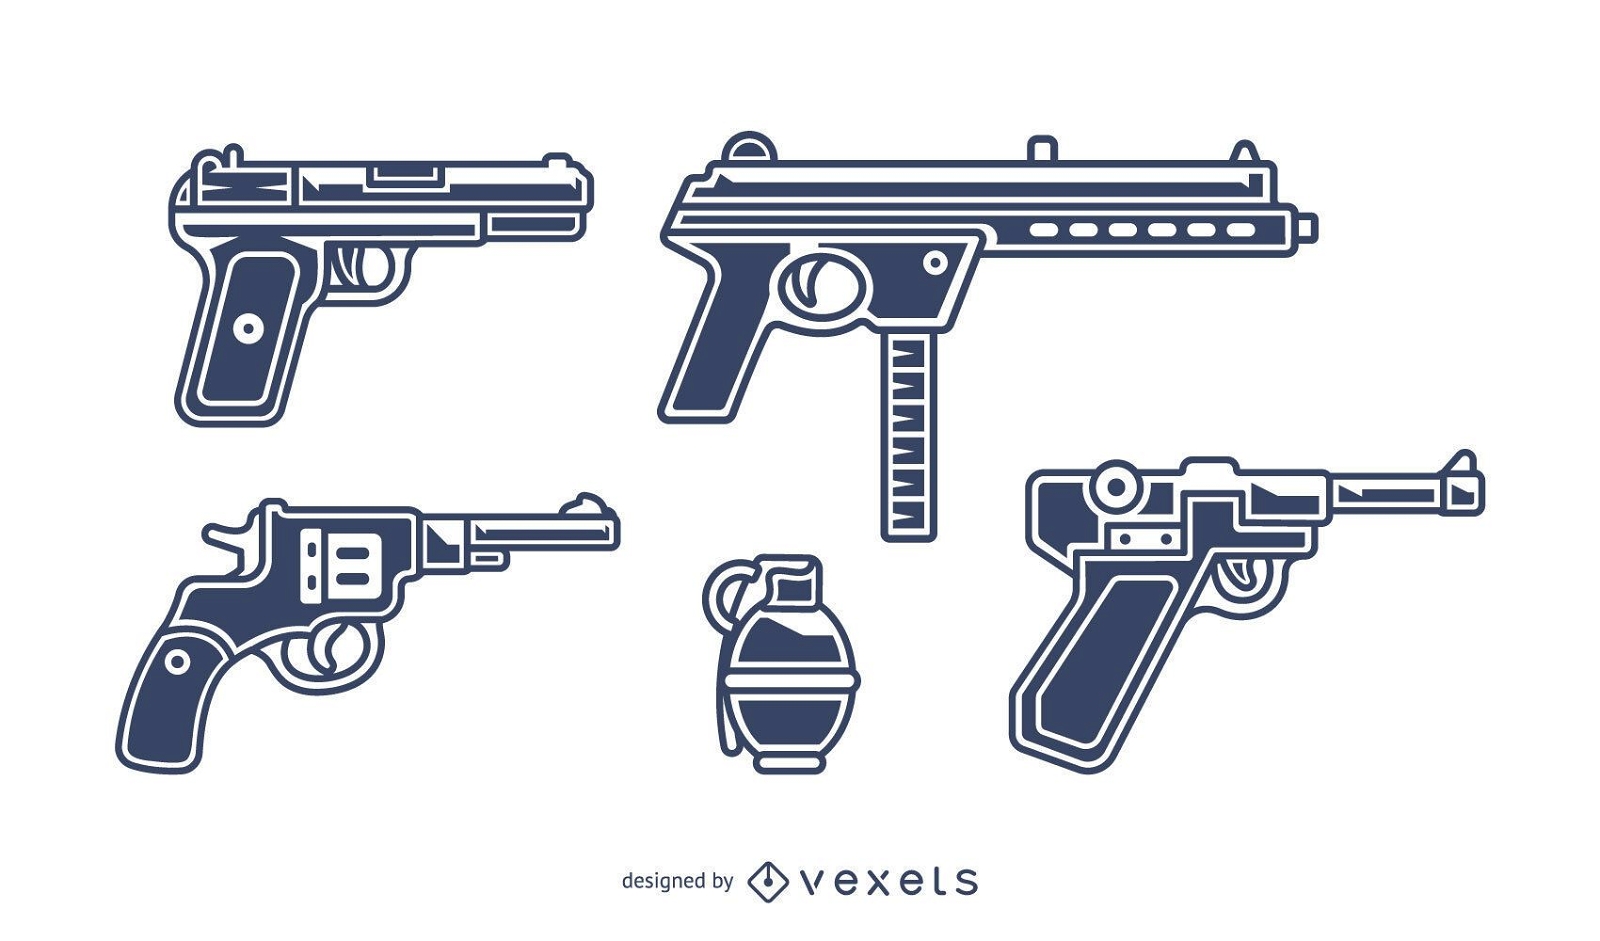 Vectores & Gráficos de armas de fuego para descargar